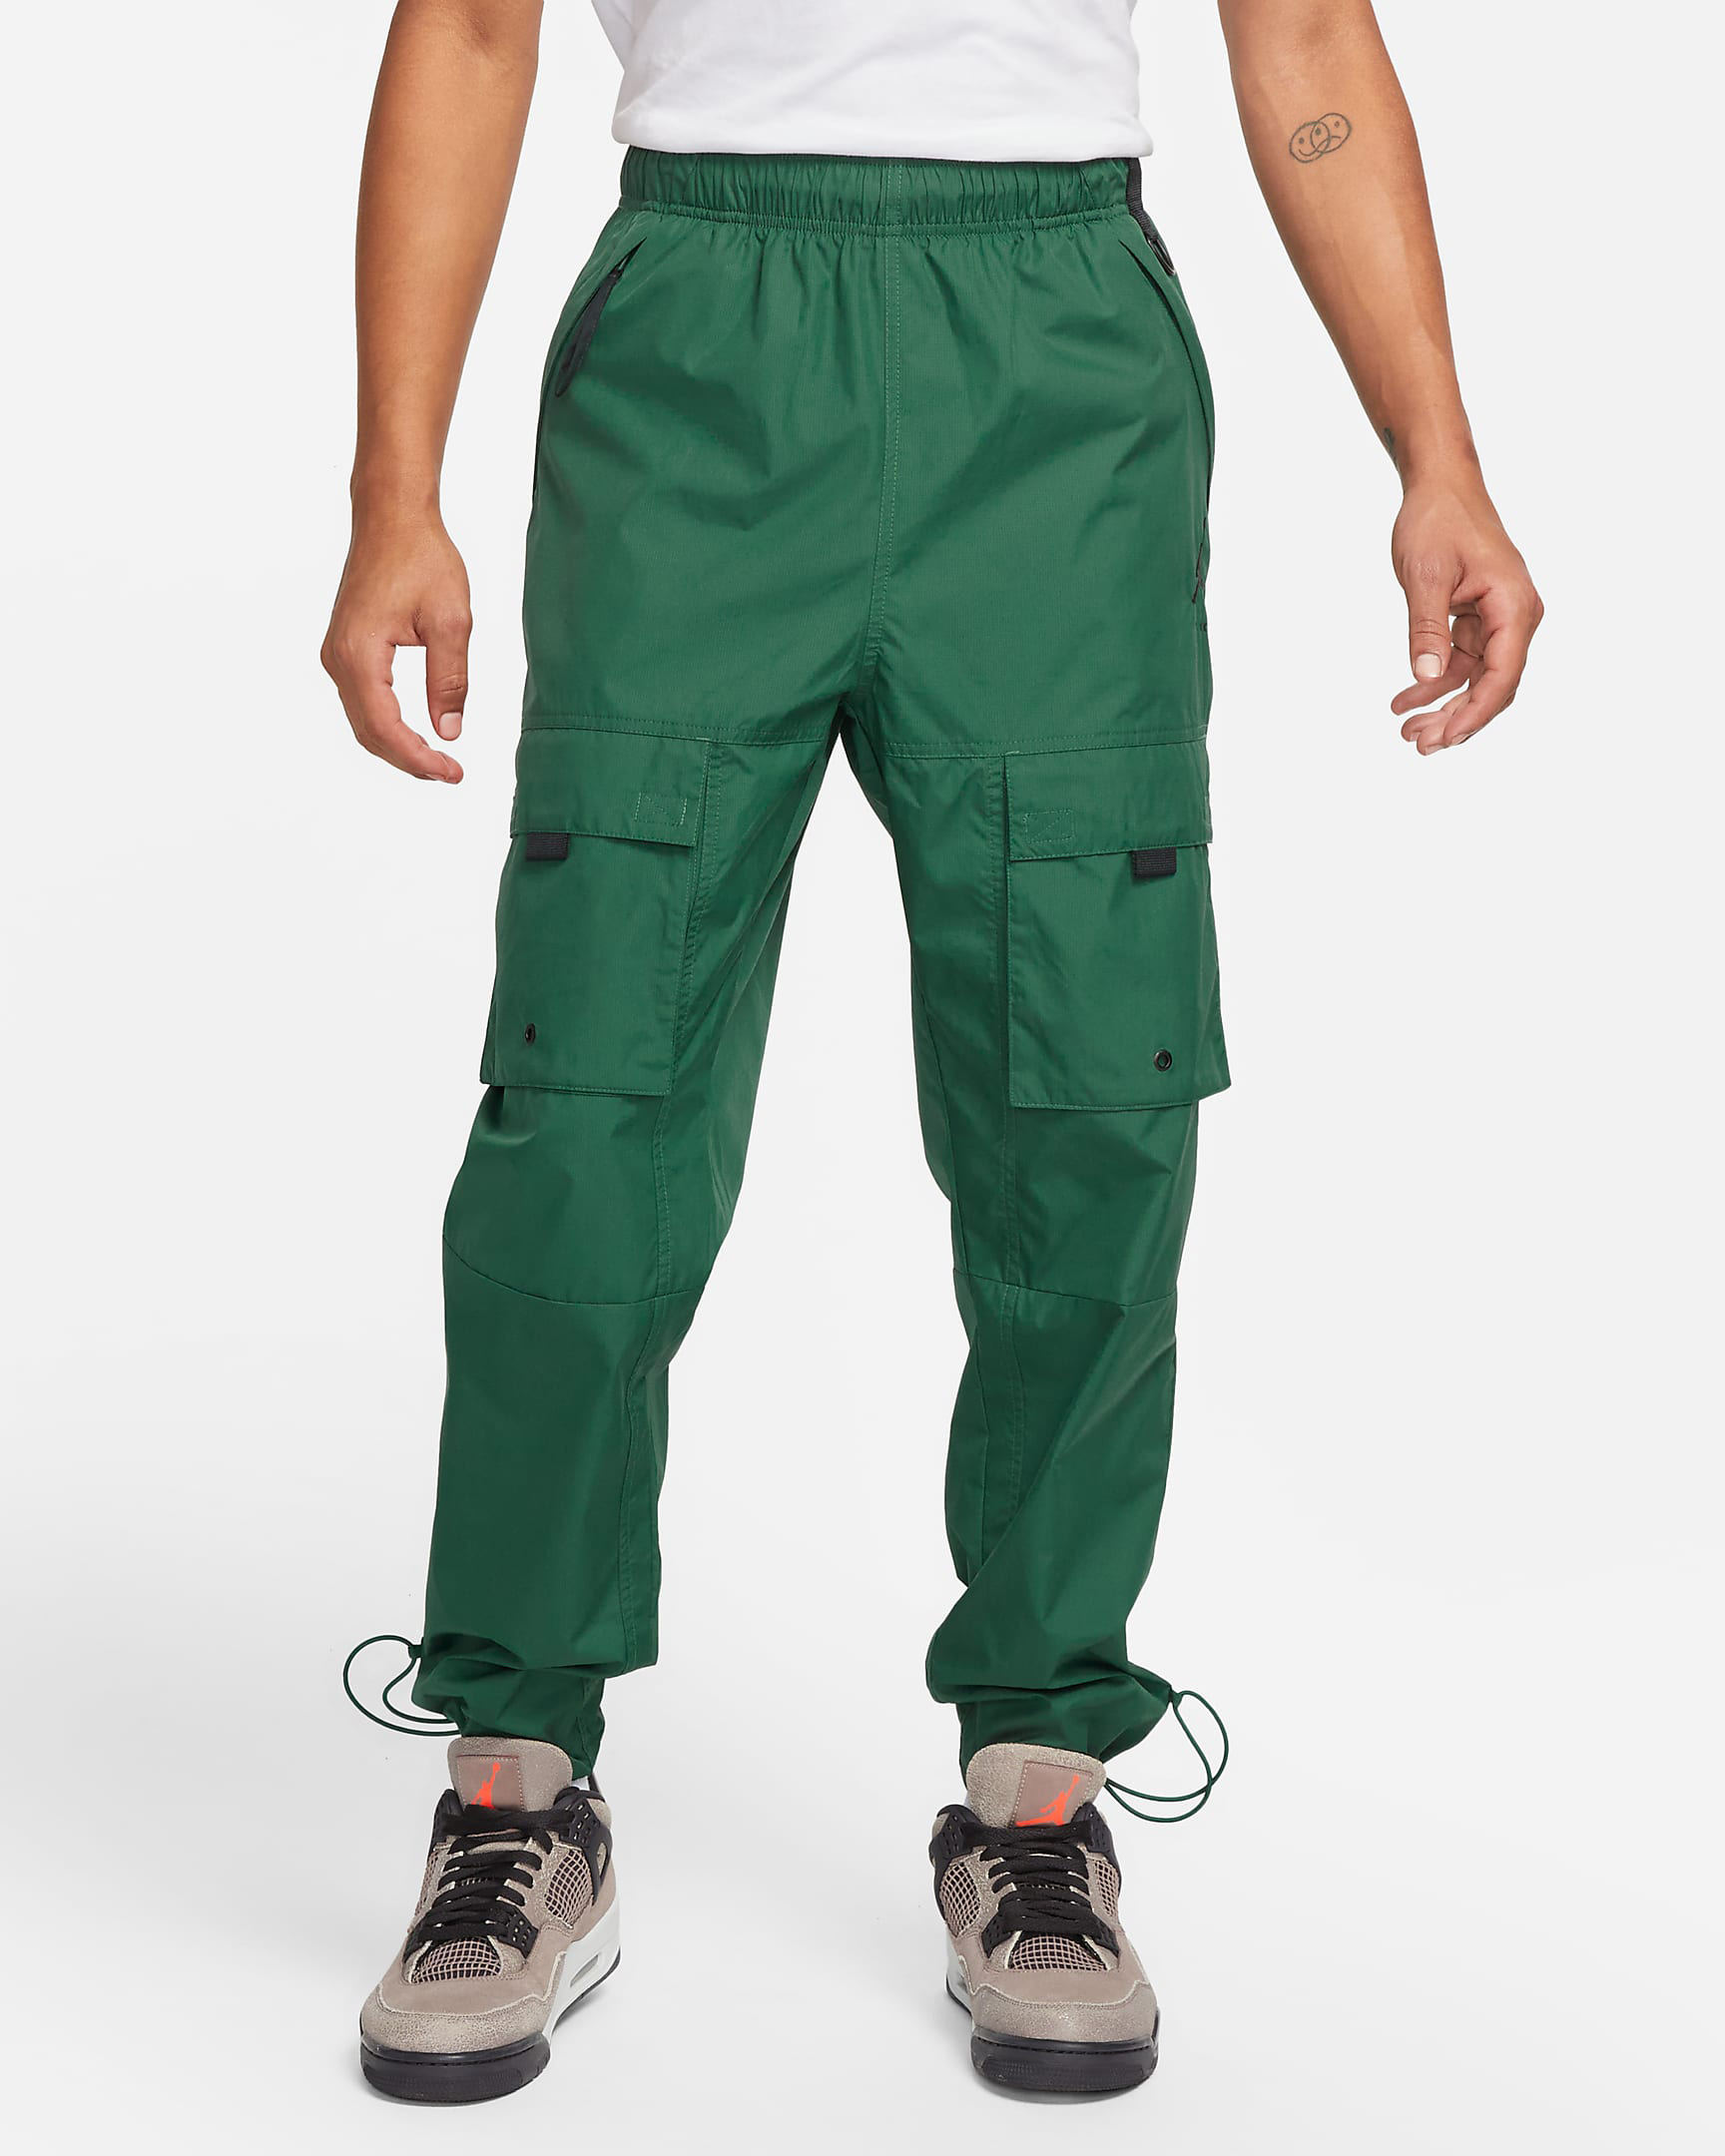 jordan-noble-green-jumpman-pants-1